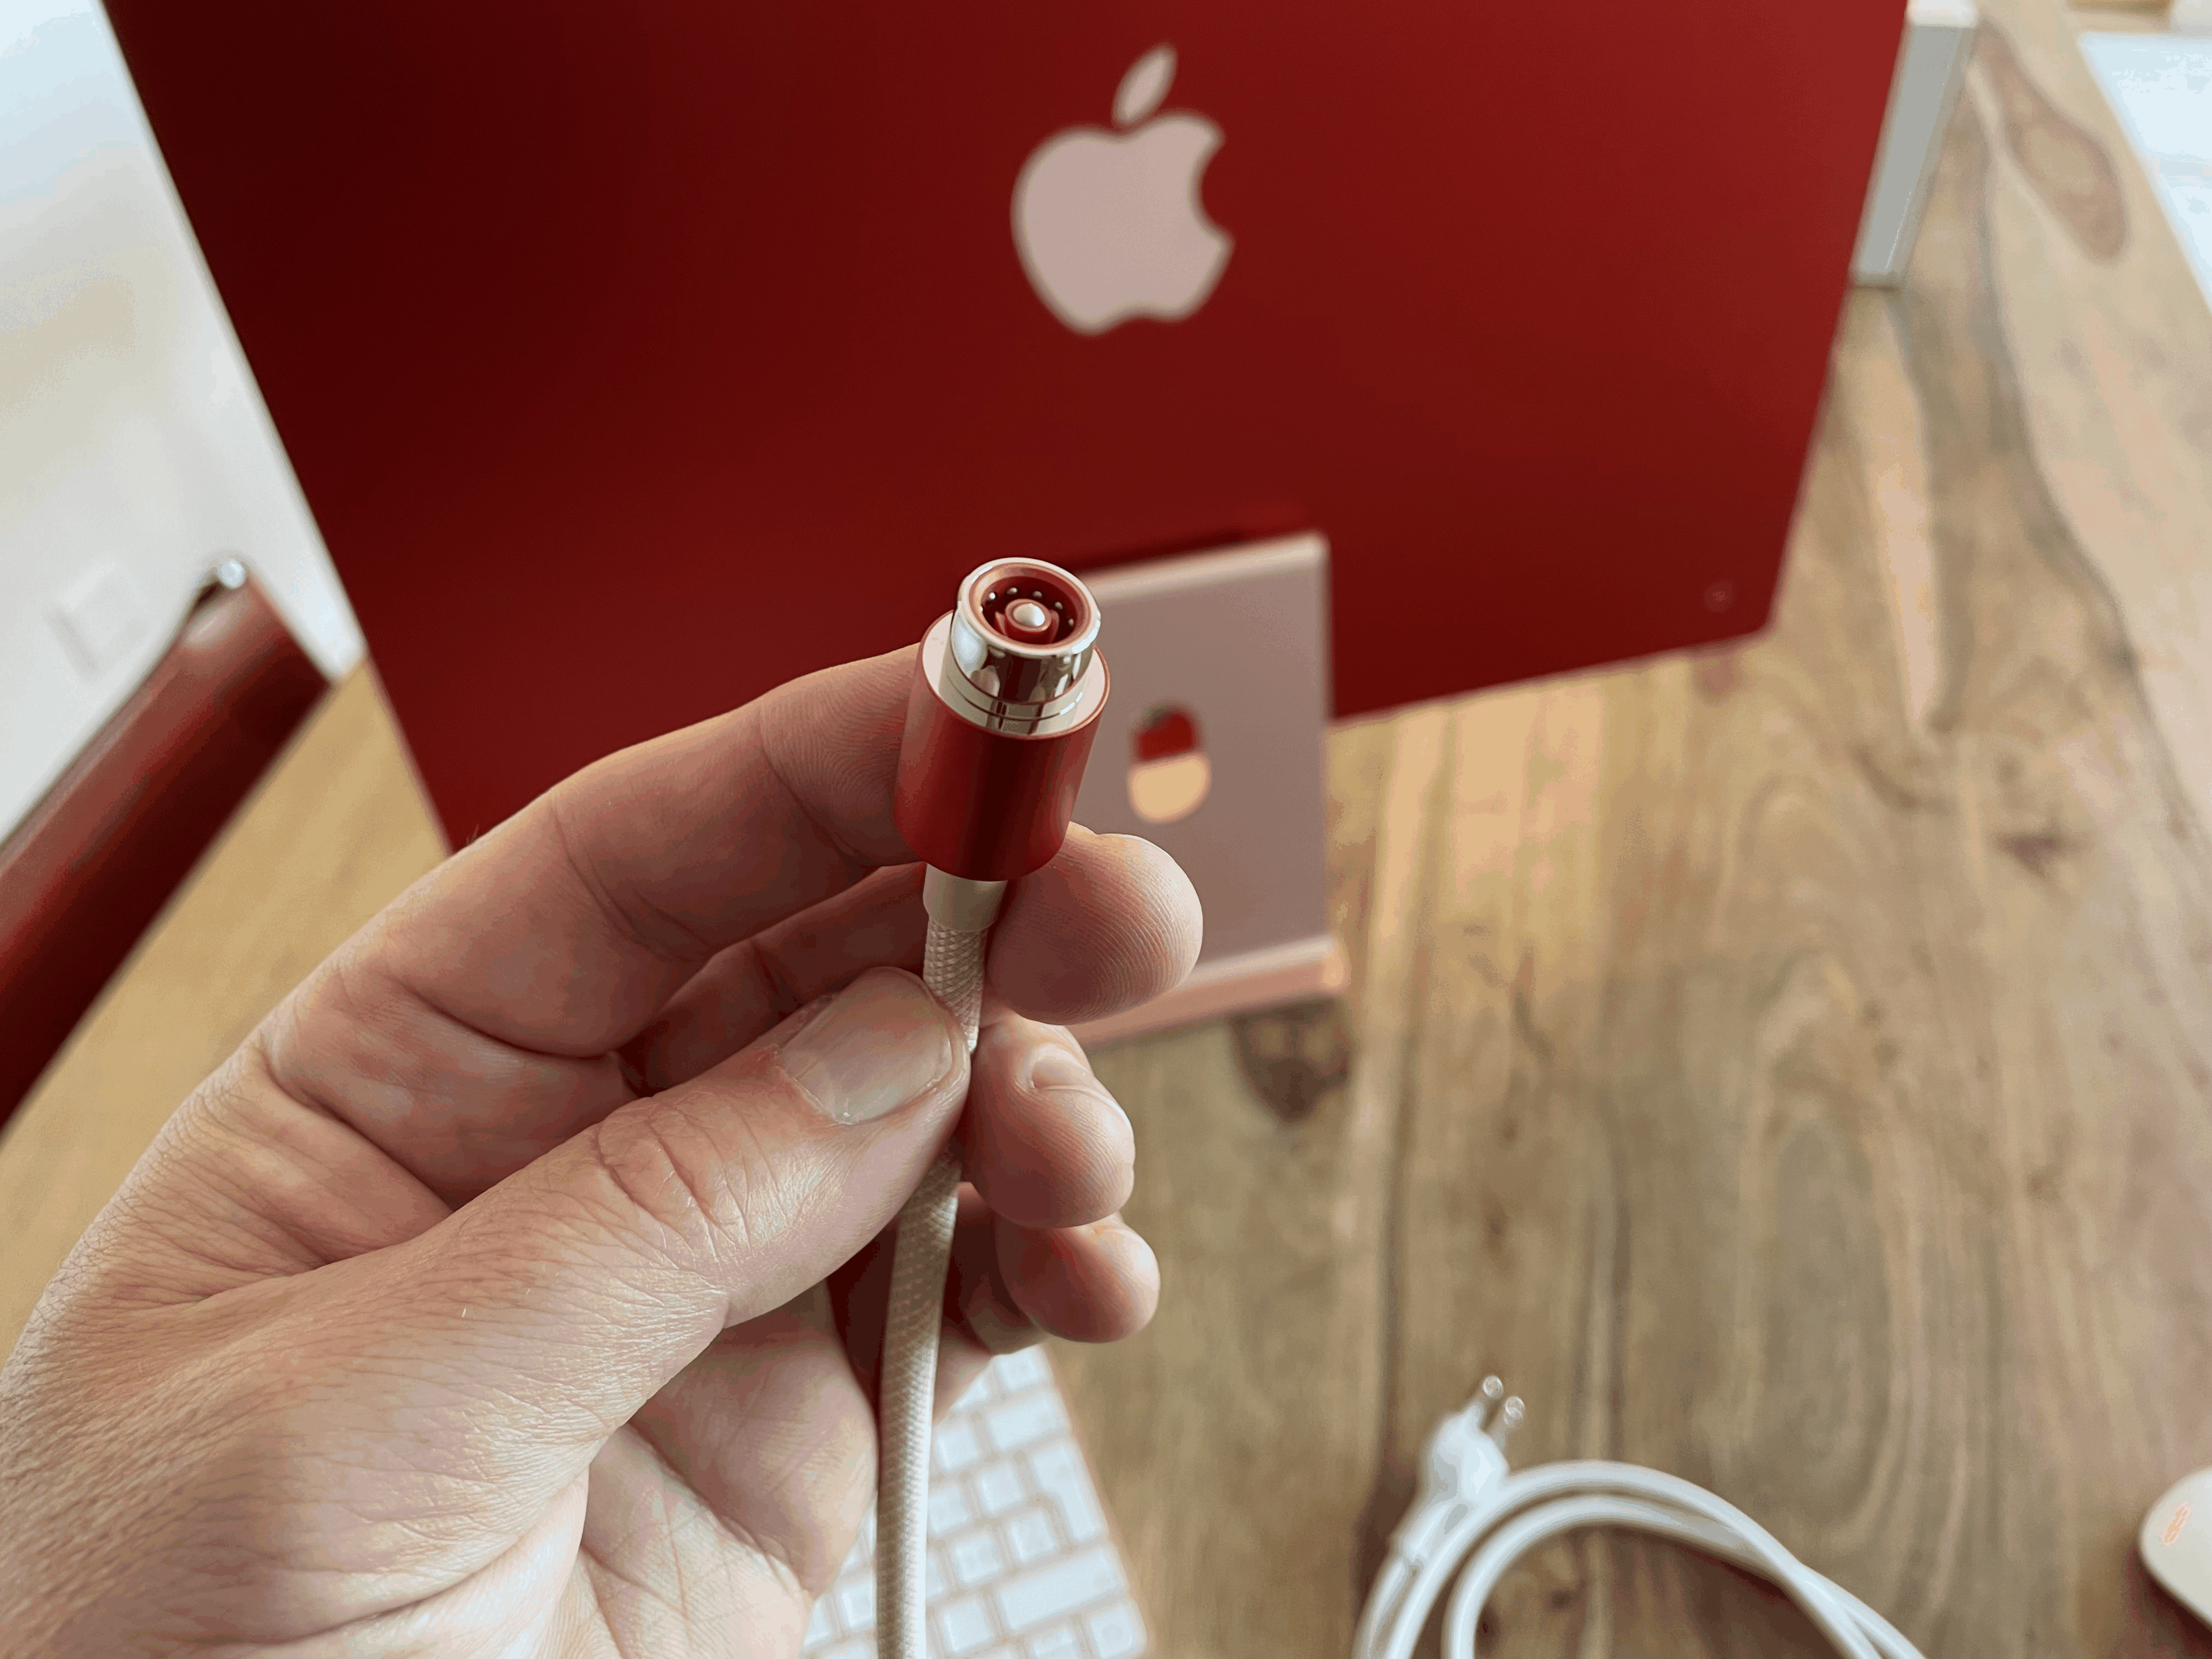 Der neue MagSafe-Stecker. Es ist eine viel festere magnetische Verbindung als bei den alten MagSafe-Kabeln, die frühere MacBooks mit Strom versorgen.